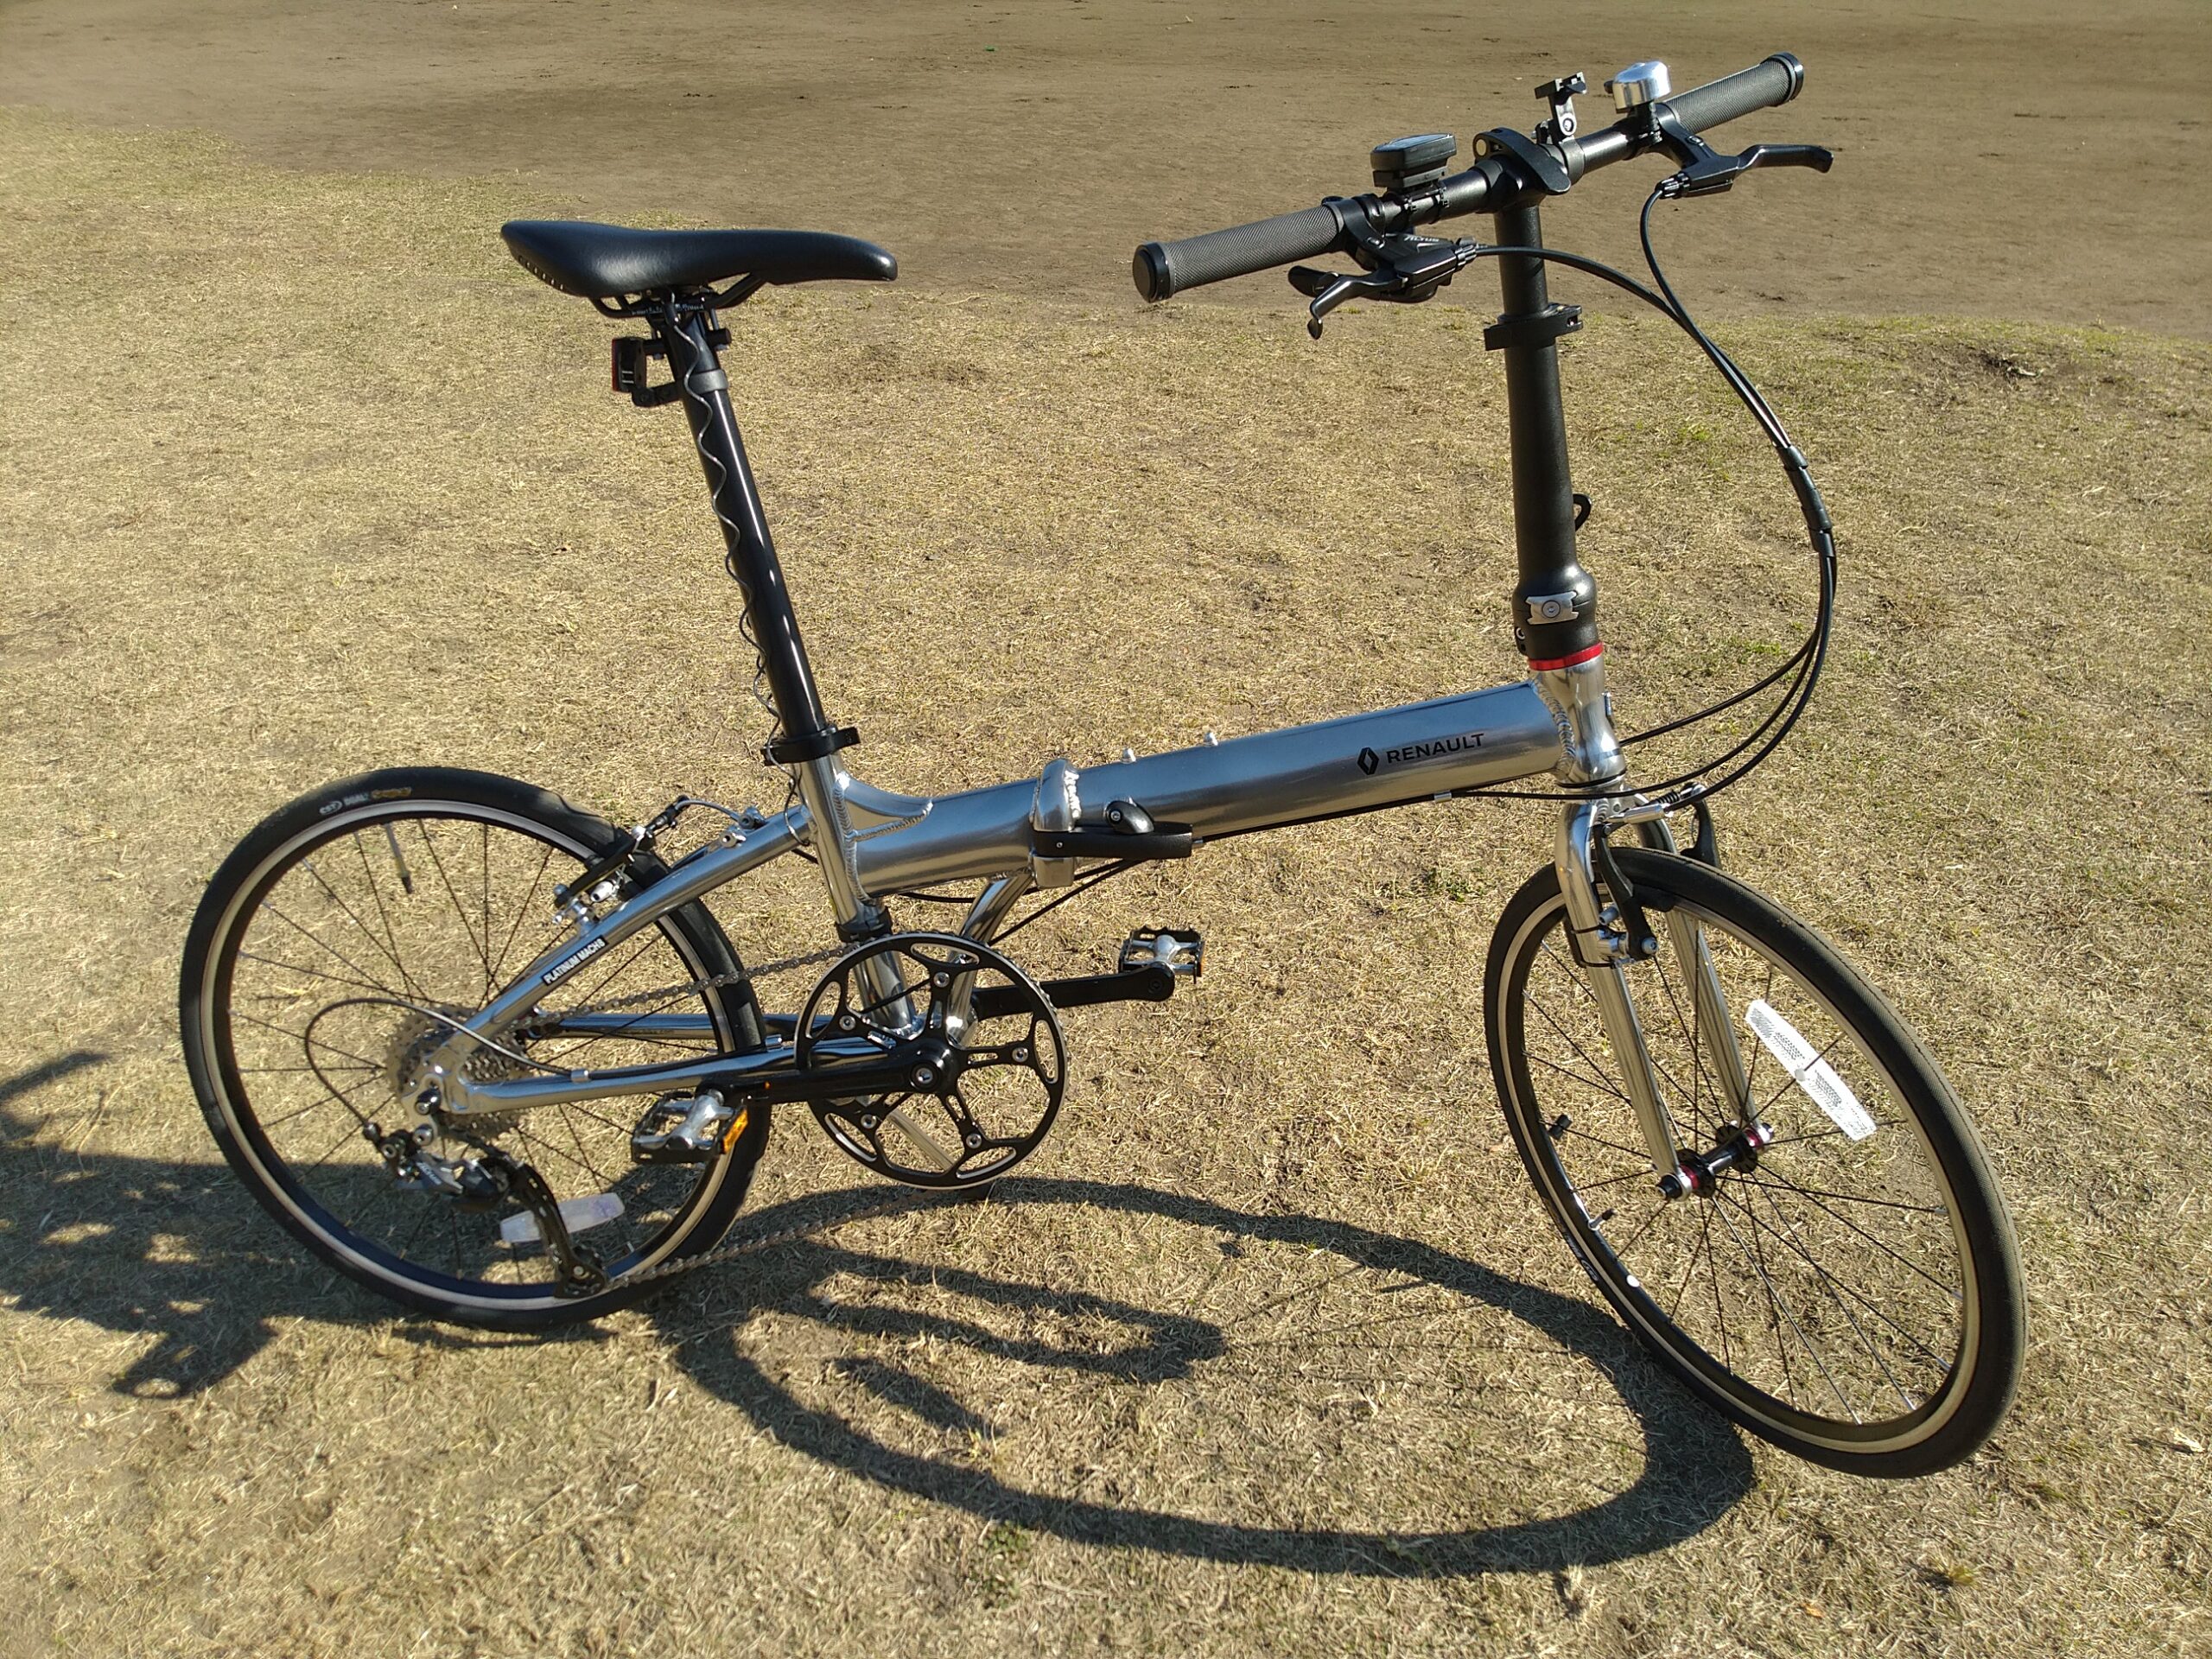 プラチナマッハ8-ルノー20インチ折り畳み自転車スペック【RUNAULT PLATINUM MACH8】